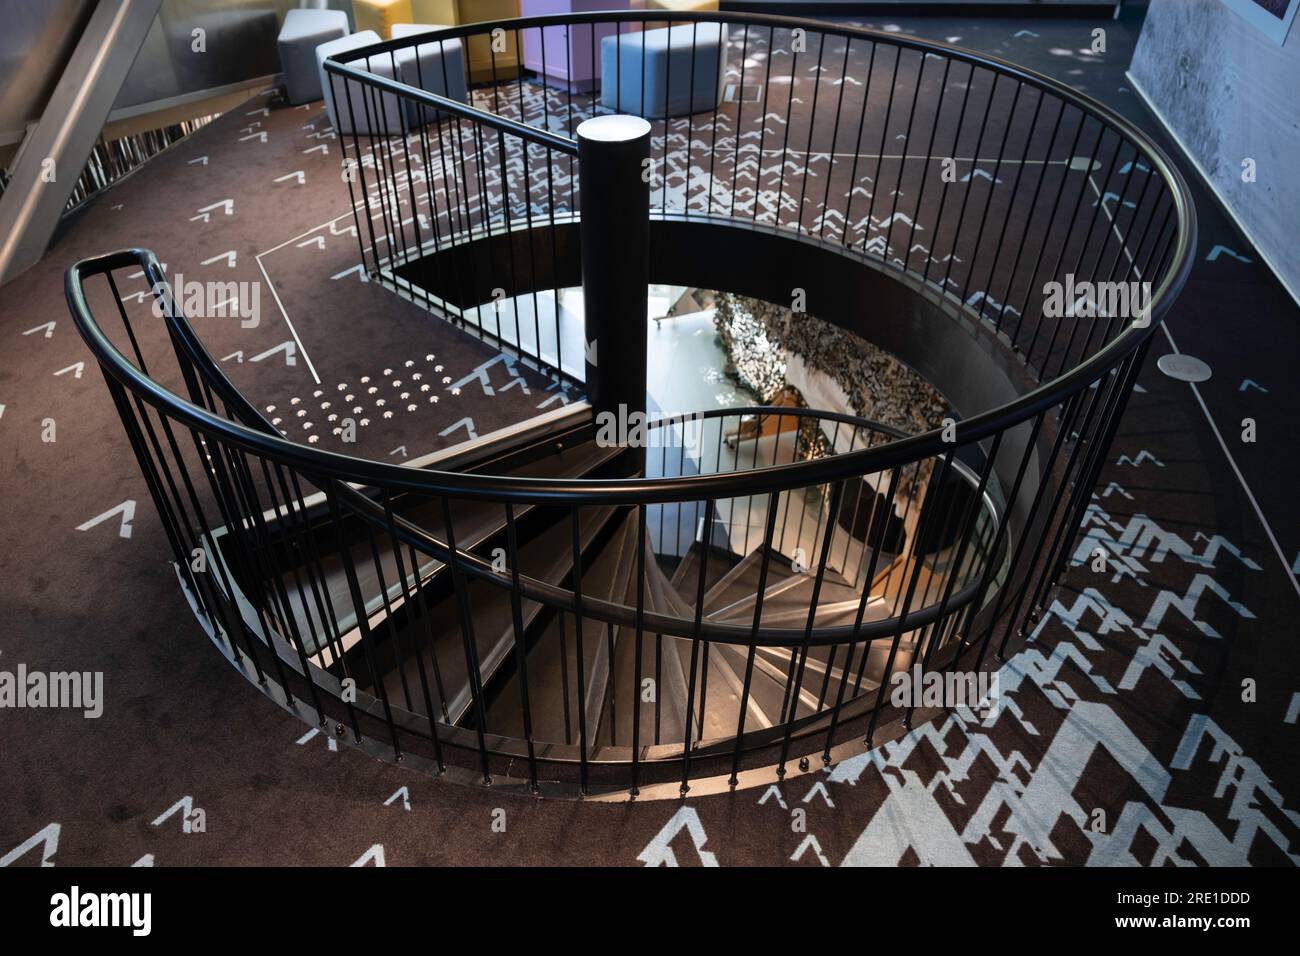 Musée des occupations et de la liberté de Vabamu. Escalier en colimaçon menant aux différents étages Banque D'Images